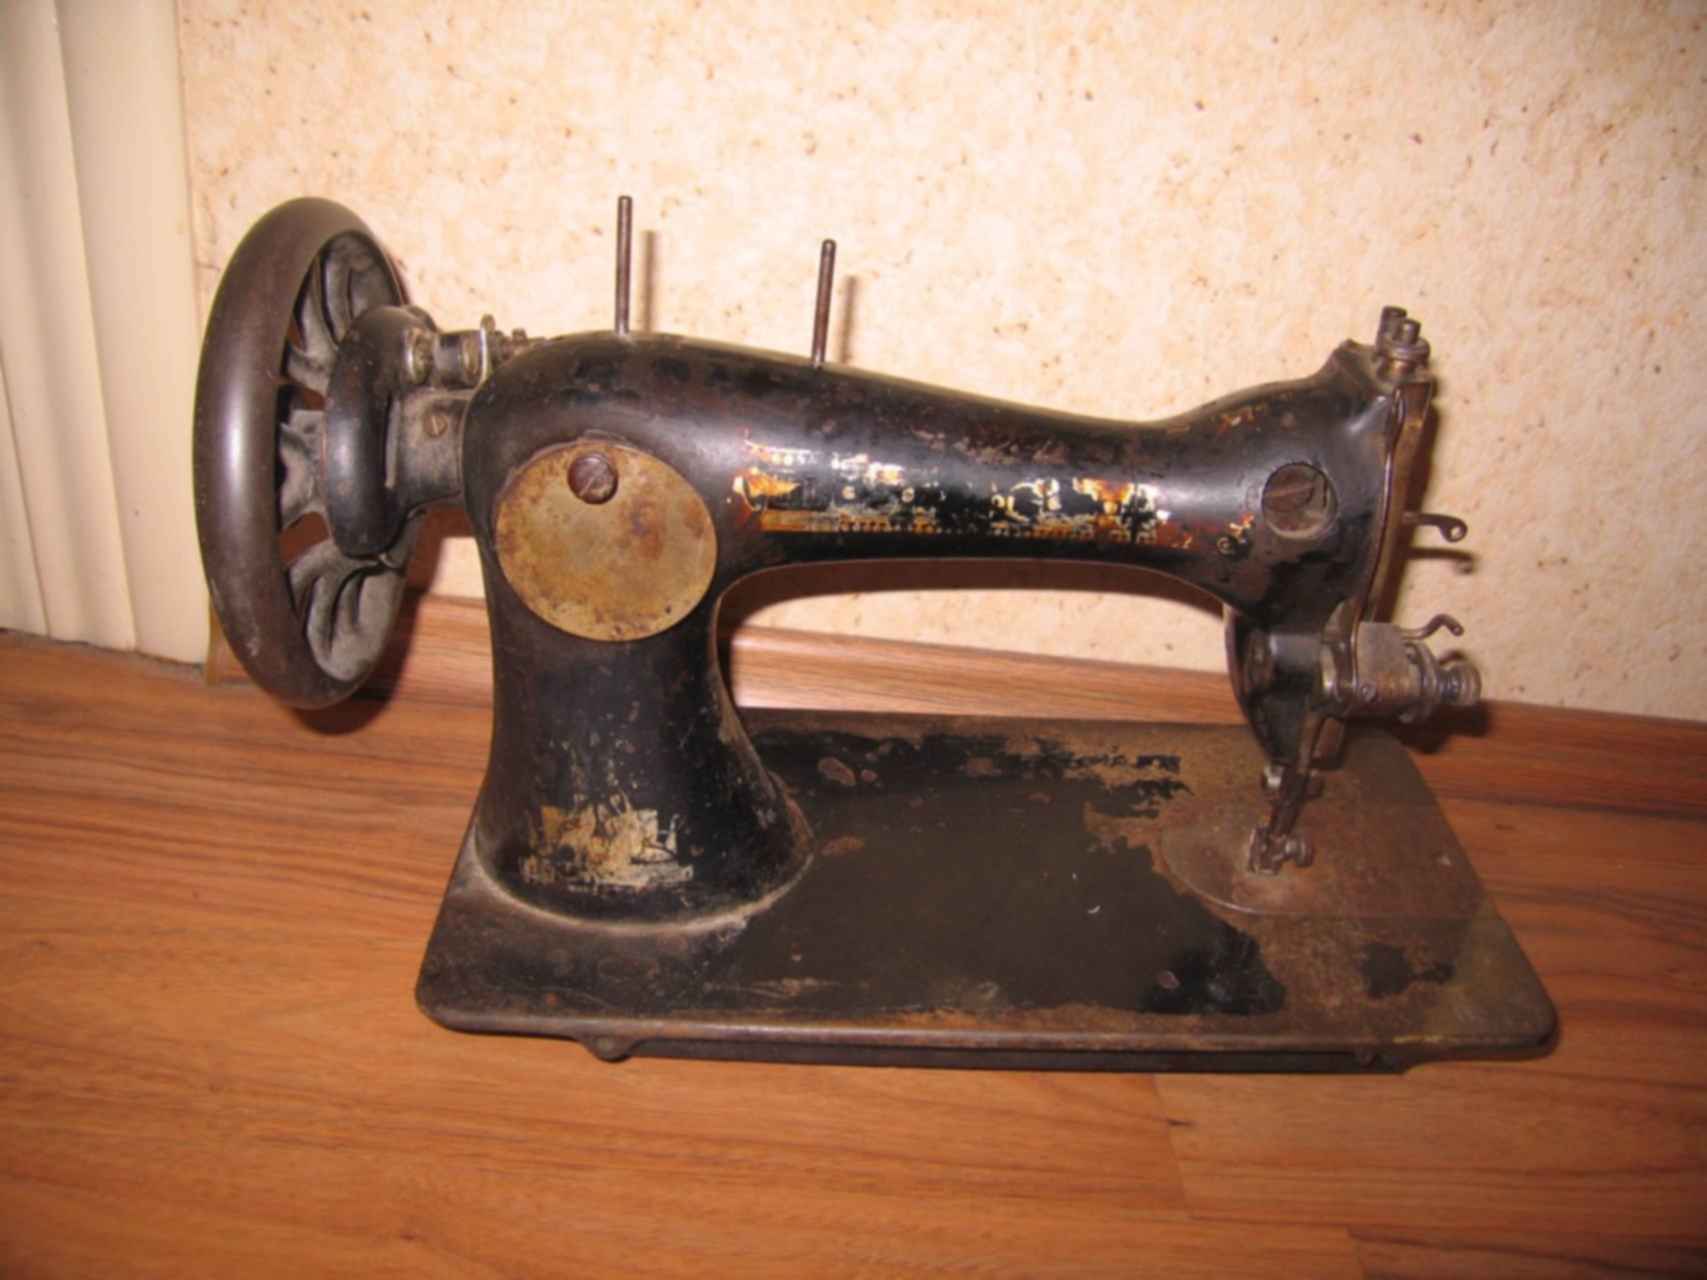 Машинки зингер с челноком. Швейная машинка (Zinger super 2001). Зингер 1865 челноком. Швейная машинка Зингер довоенная. Швейная машинка Зингер Старая вид сбоку.